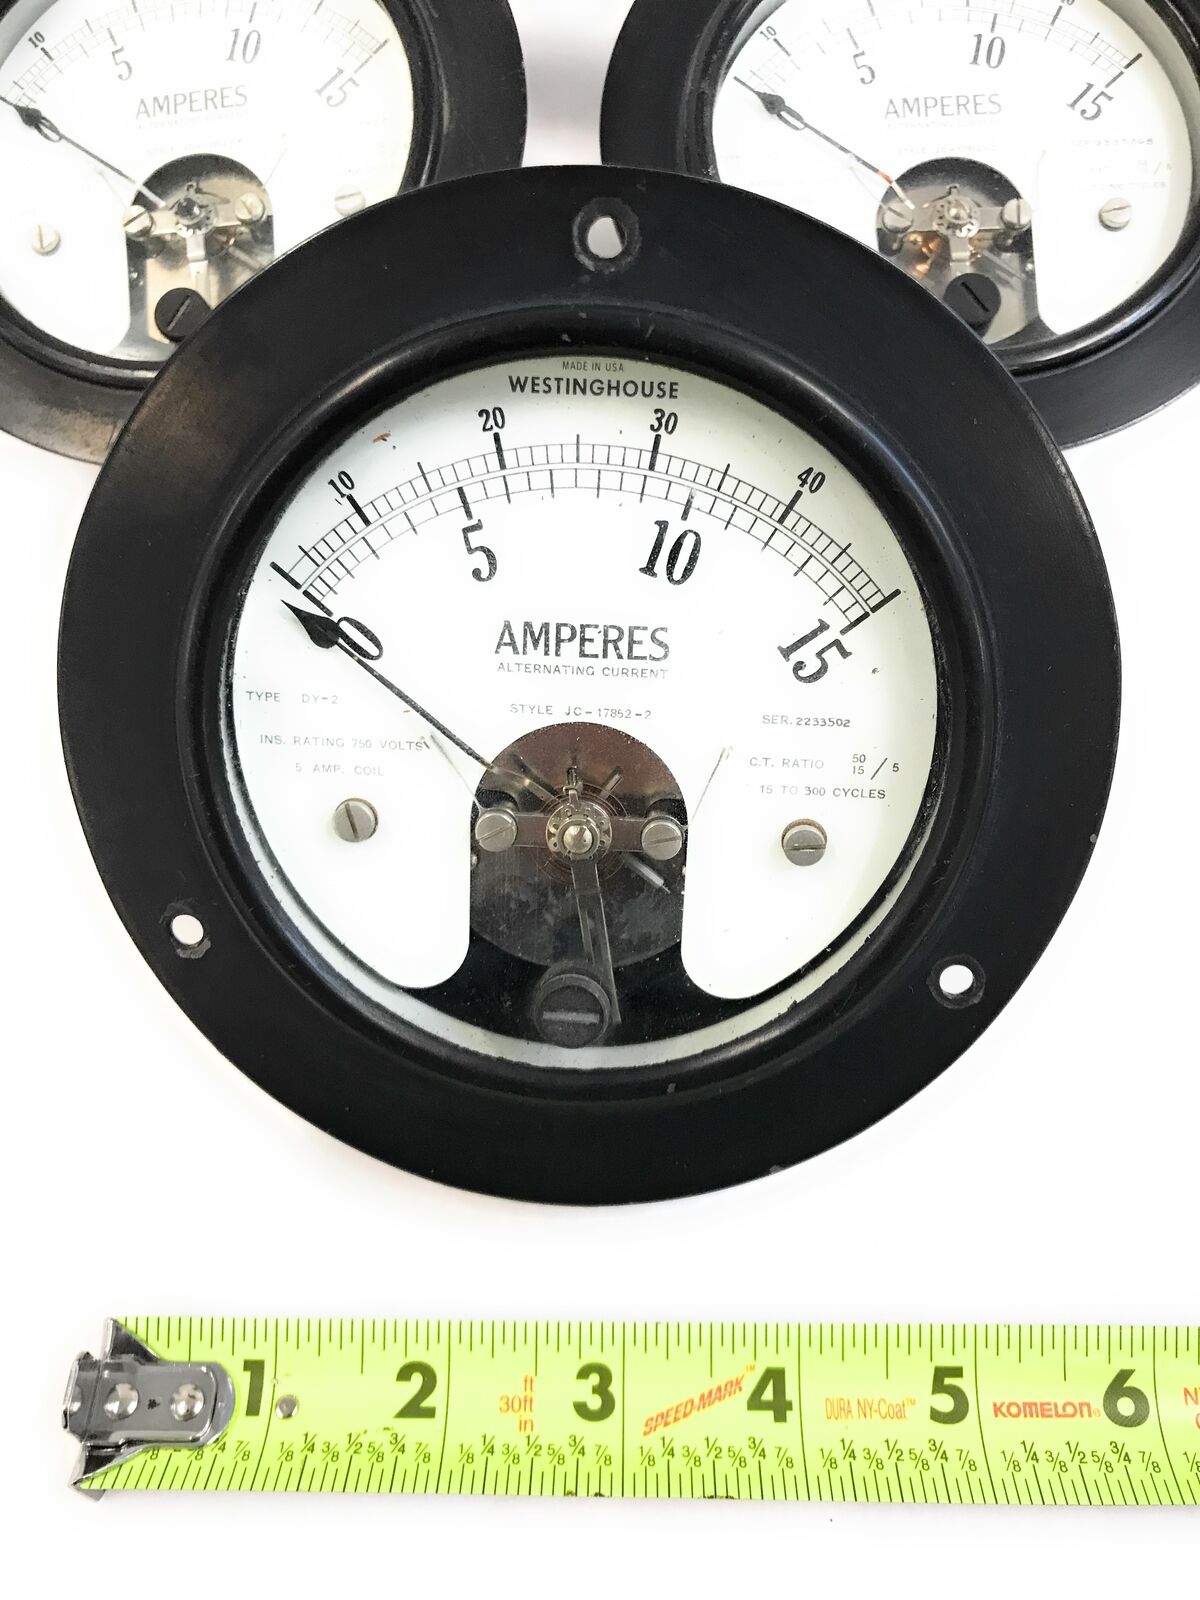 Lot of 5 Vintage Westinghouse DY-2 AC Amperes Ammeter JC-17852-2 Gauge 0-15 Amp